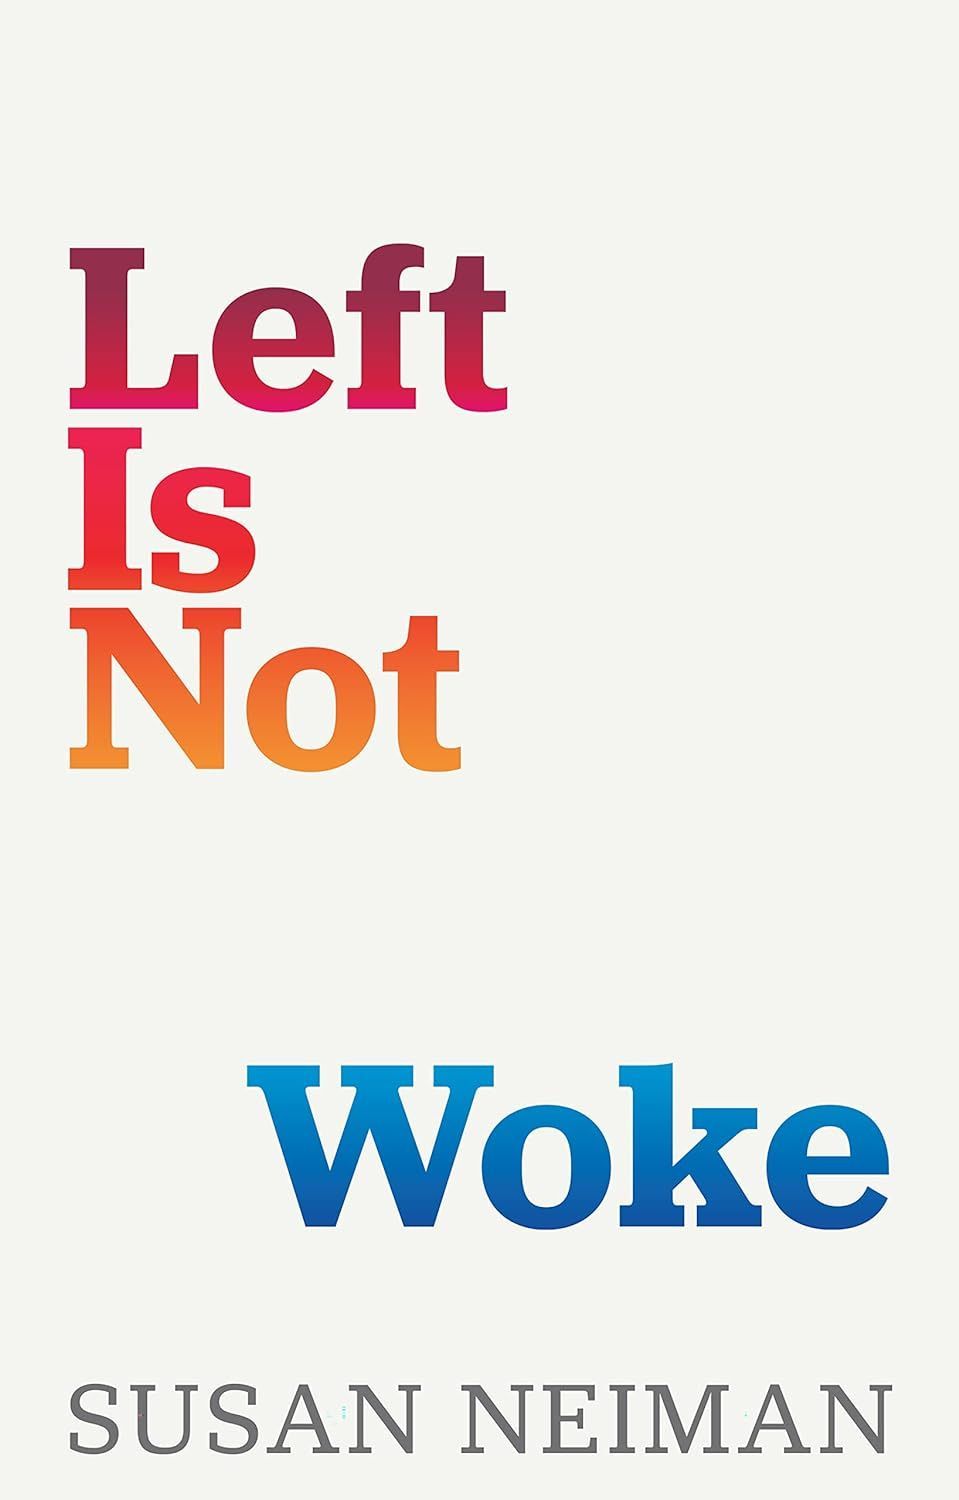 Critically Cringe: On Susan Neiman’s “Left Is Not Woke”